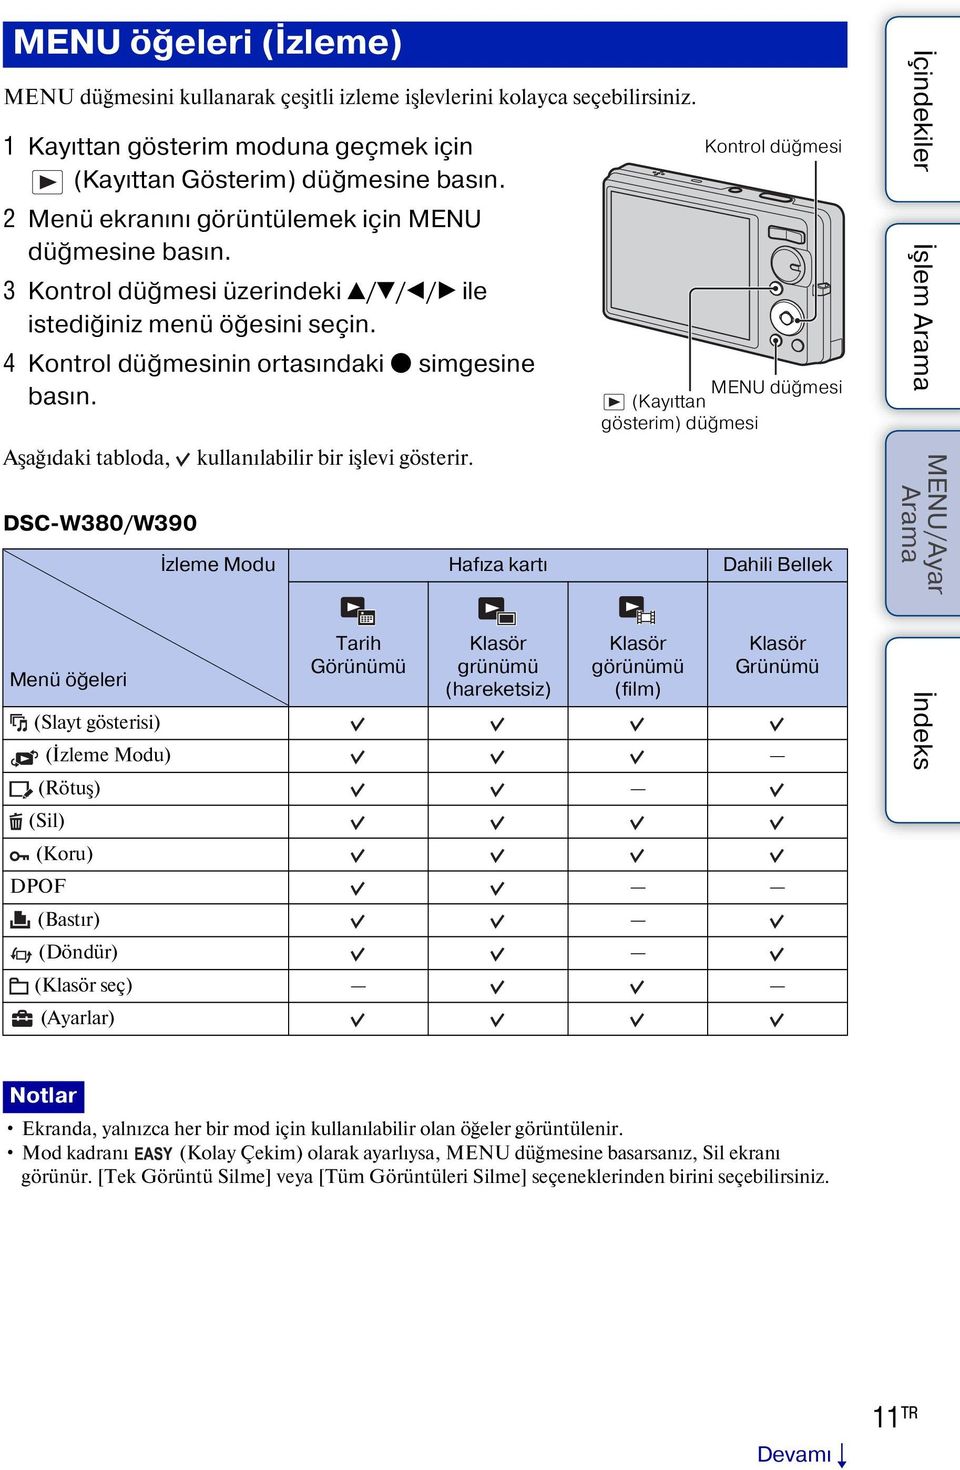 Aşağıdaki tabloda, DSC-W380/W390 Menü öğeleri kullanılabilir bir işlevi gösterir.